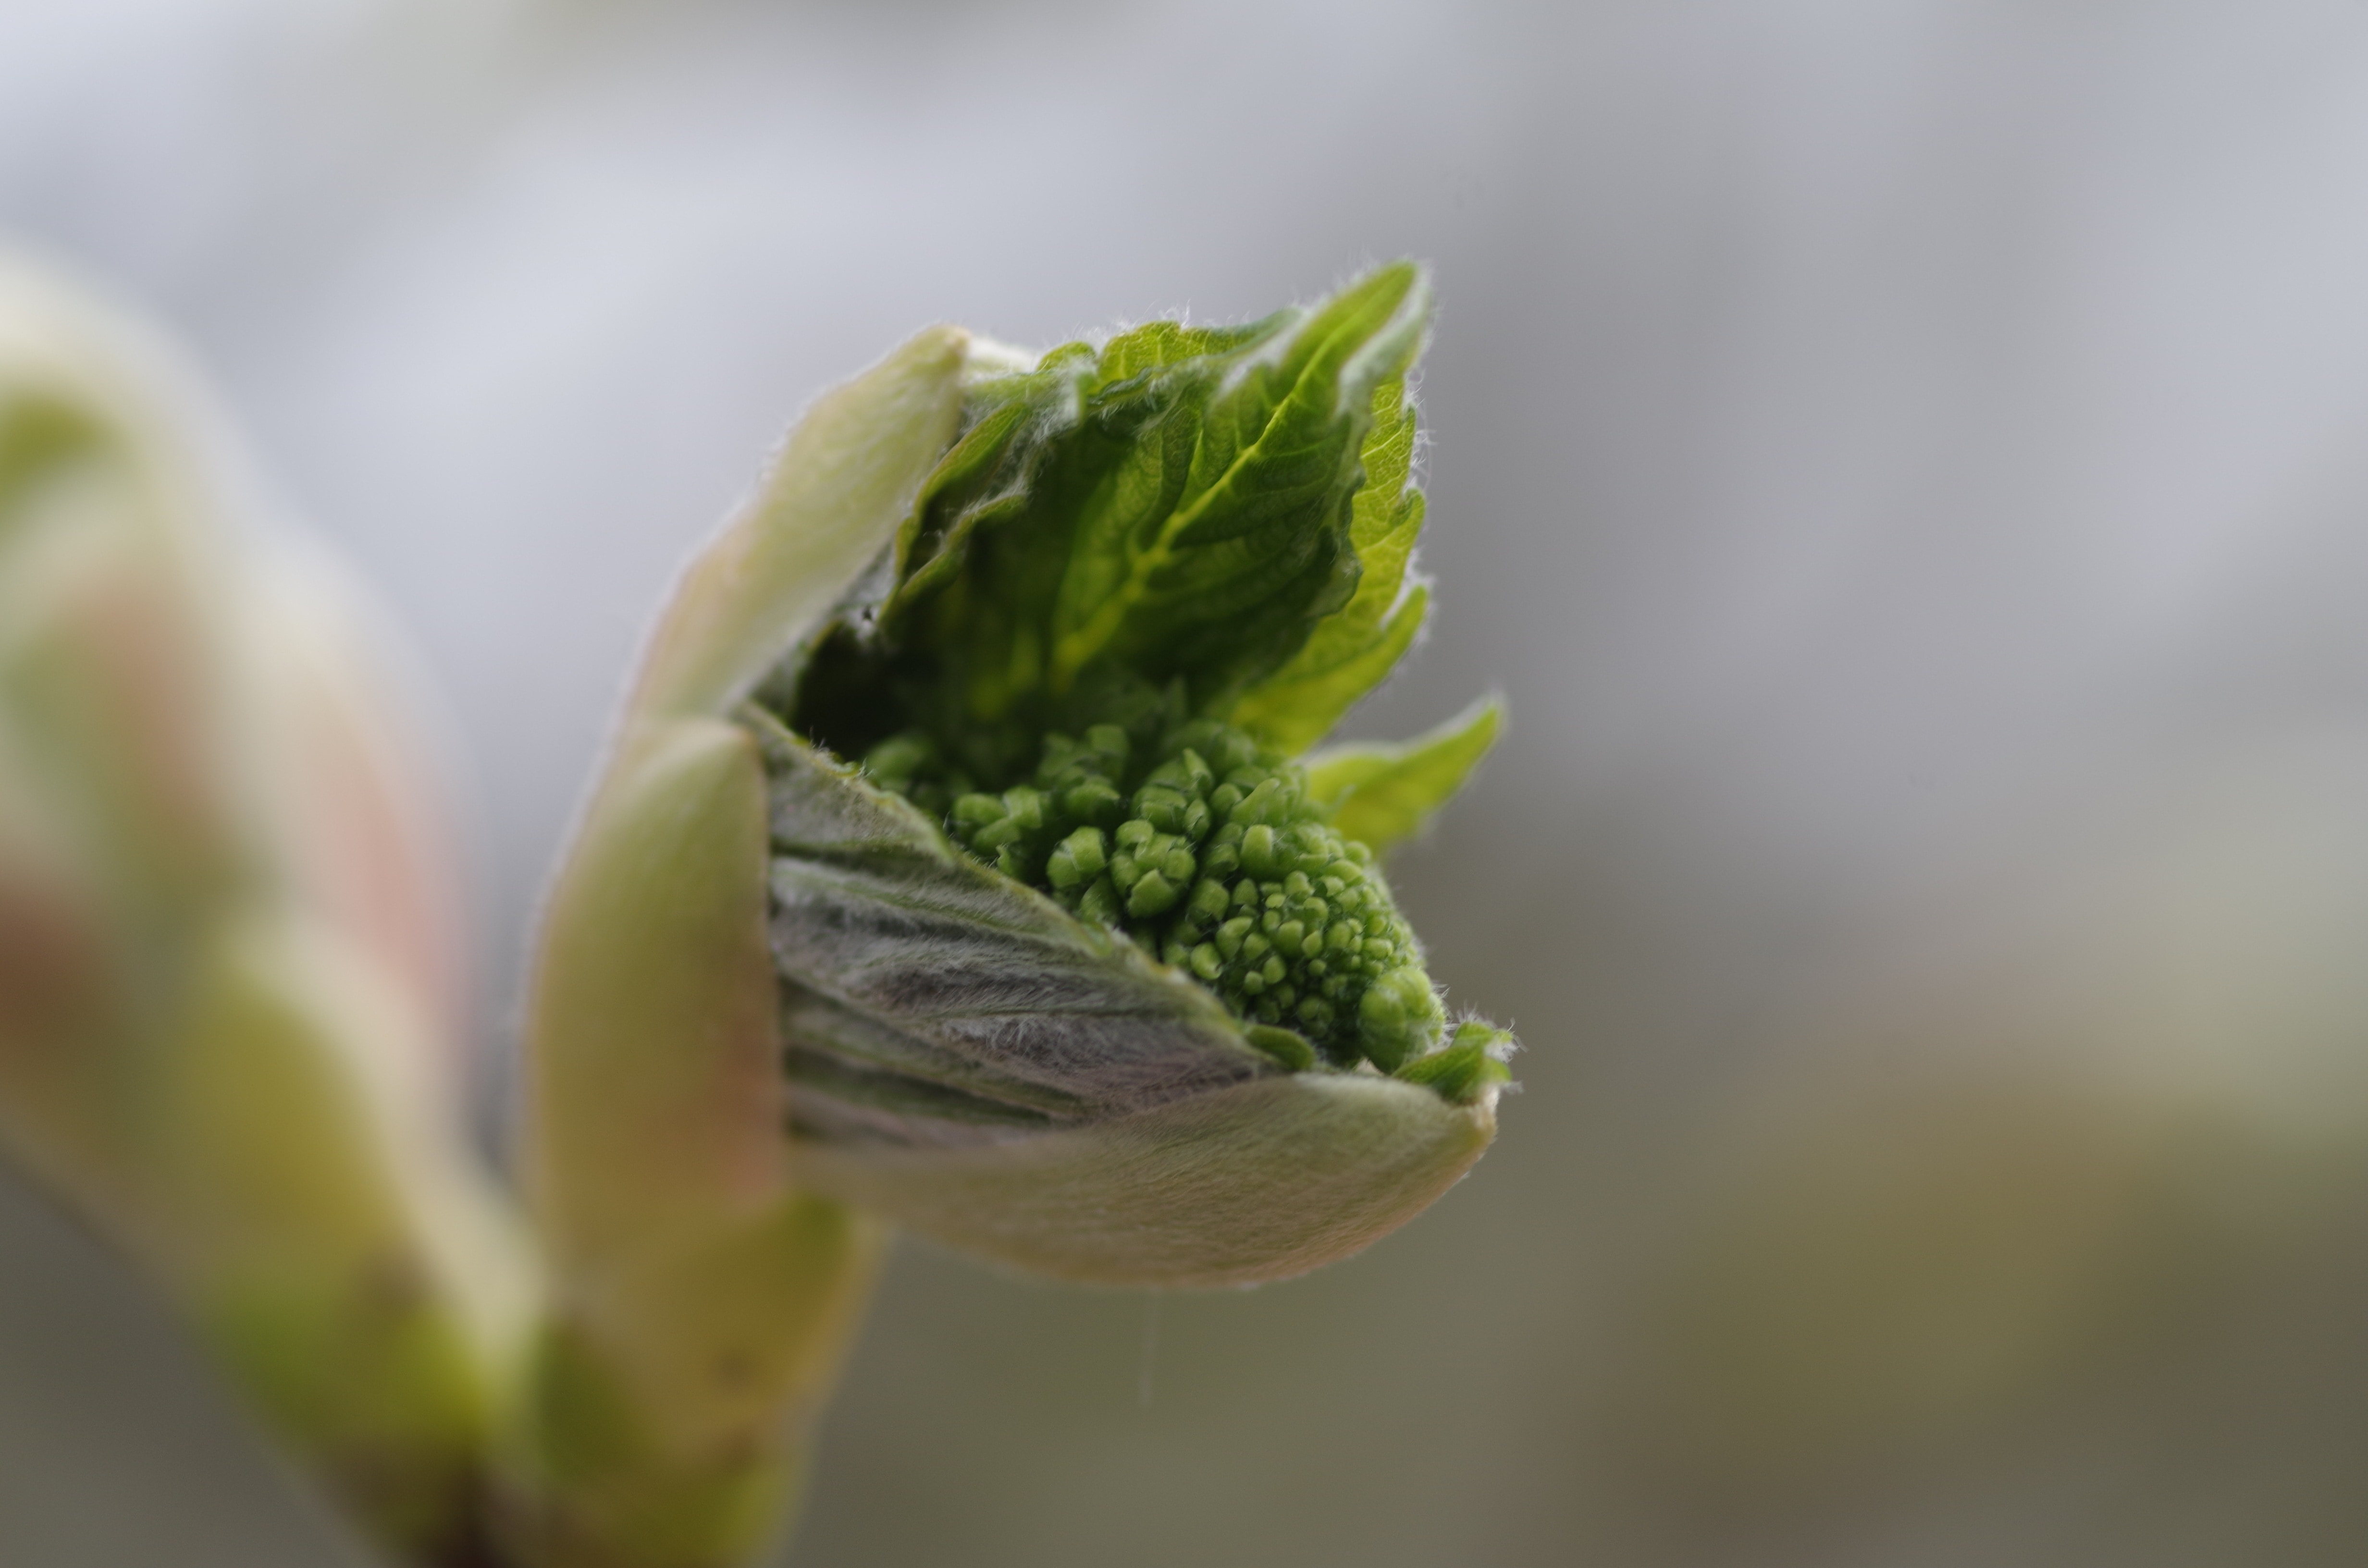 green flower bud in shallow focus lens